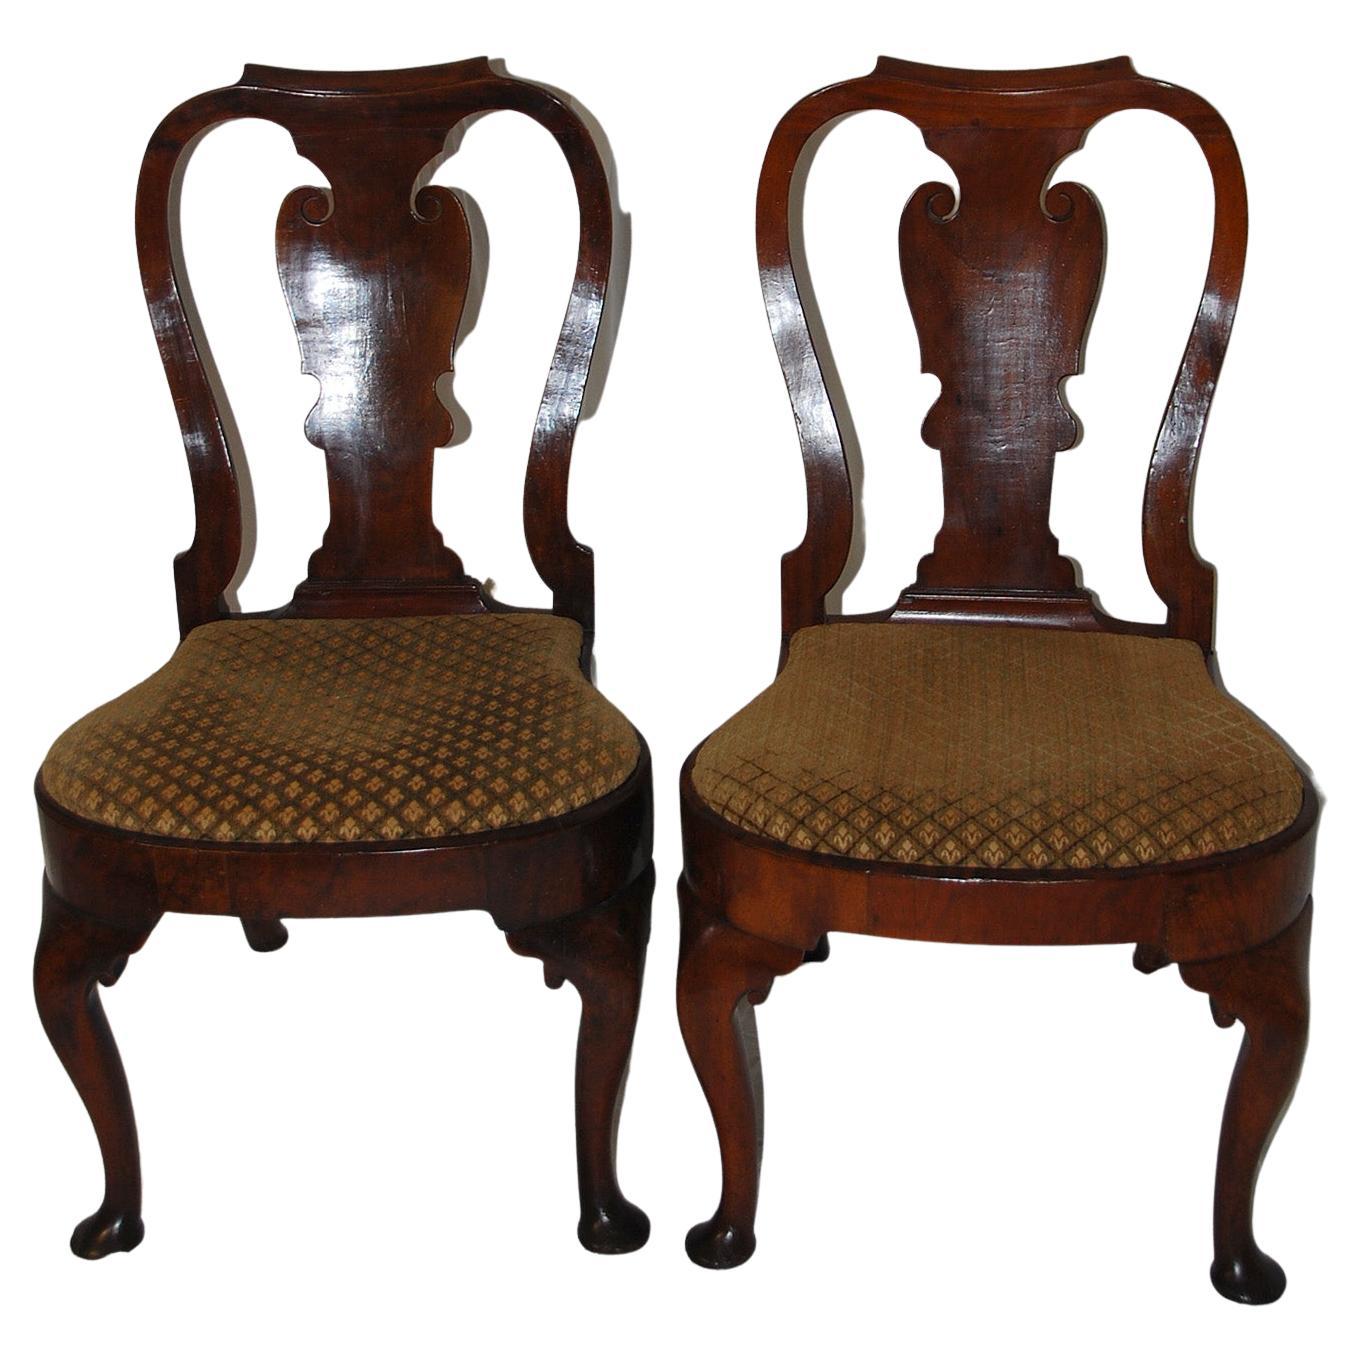 Englisches Paar Ballon-Sessel aus Nussbaumholz aus der Queen Anne-Periode des 18. Jahrhunderts